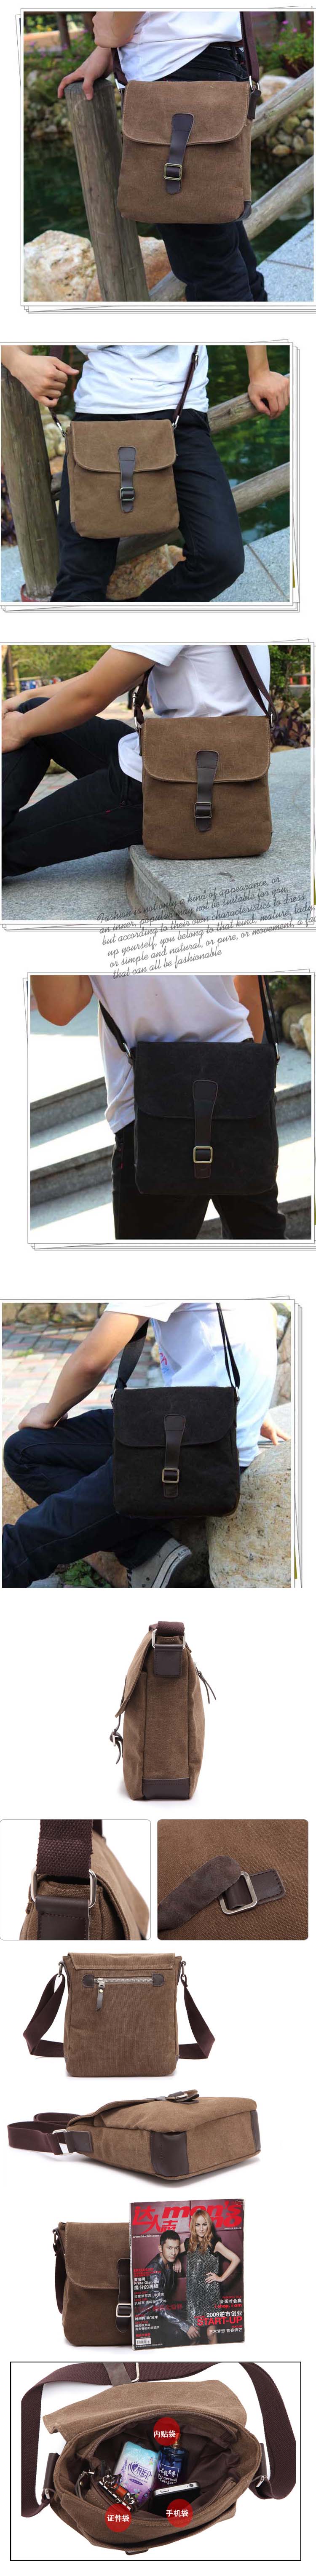 jual slingbags pria model tas selempang yang sangat digemari pria modern